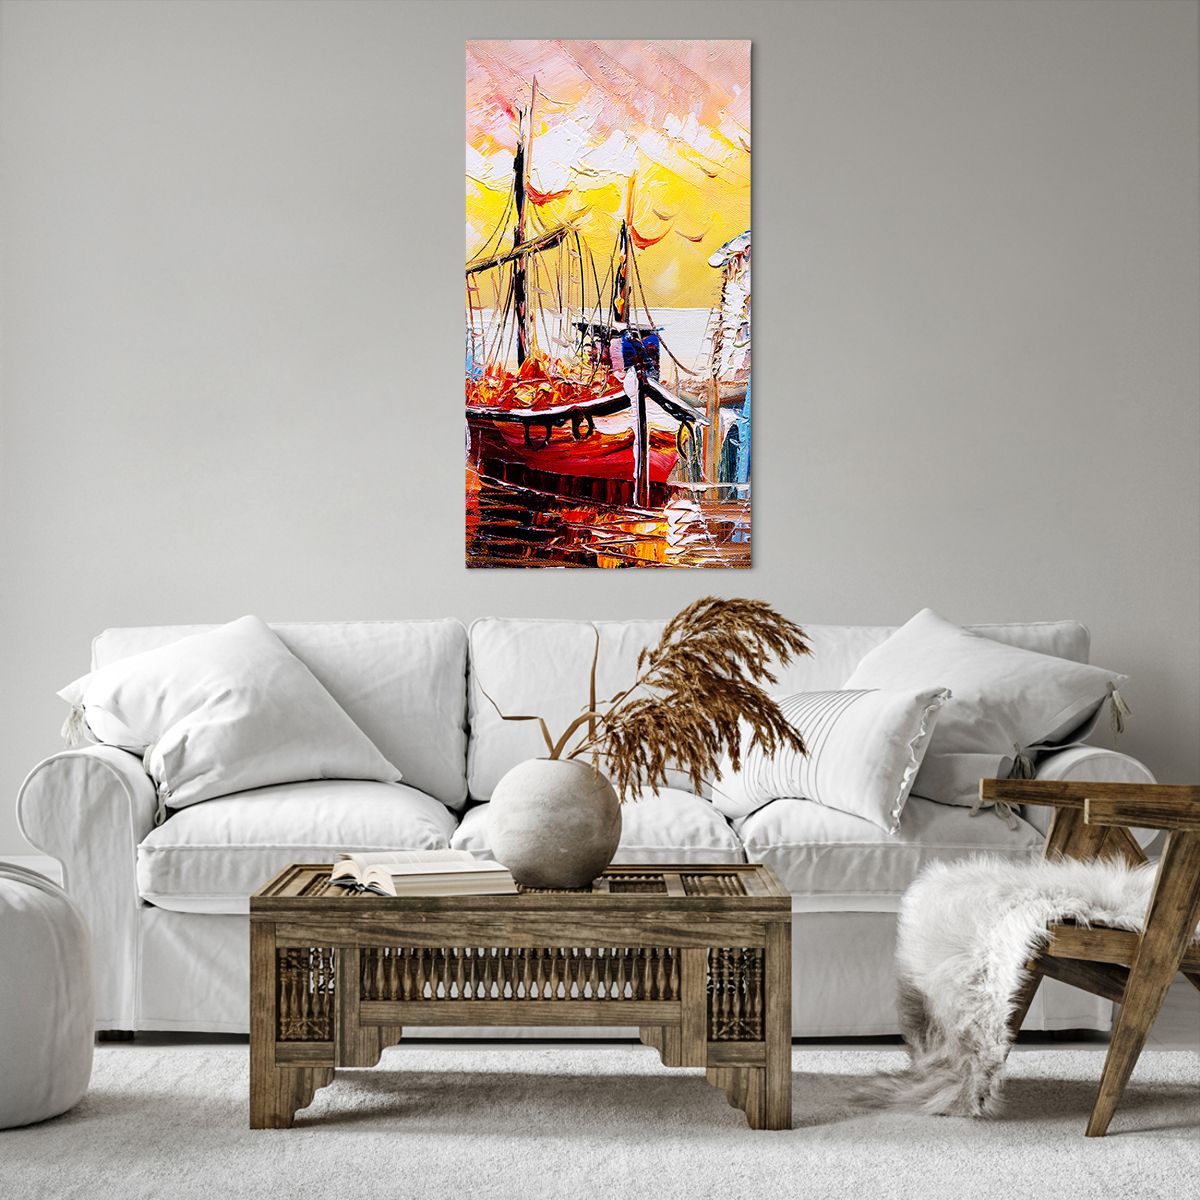 Bild auf Leinwand Landschaft, Bild auf Leinwand Fischereihafen, Bild auf Leinwand Boote, Bild auf Leinwand Die Vögel, Bild auf Leinwand Kunst